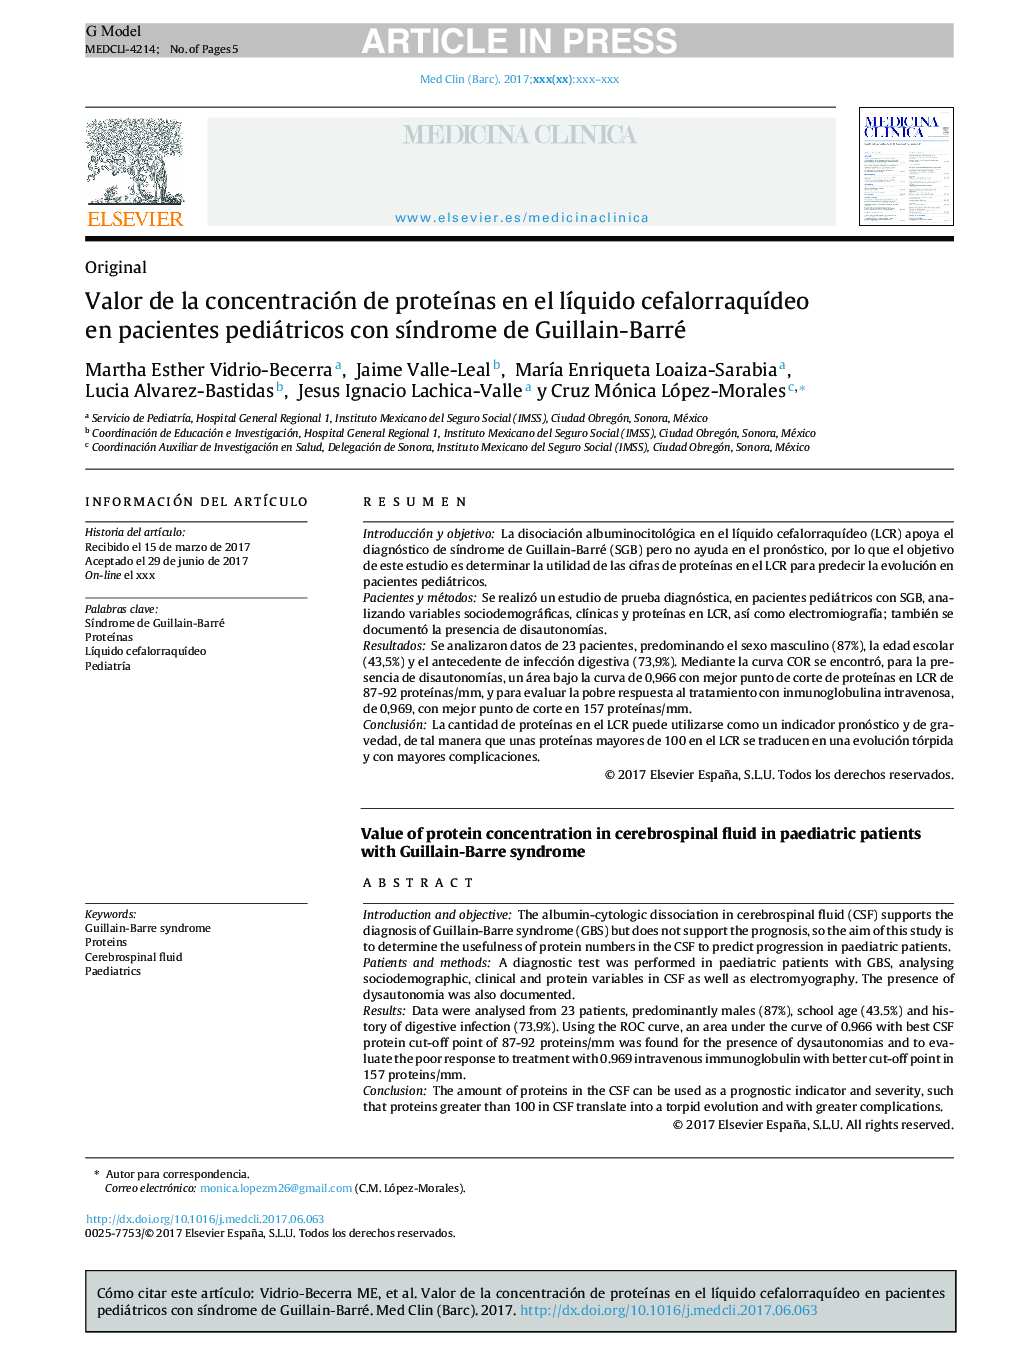 Valor de la concentración de proteÃ­nas en el lÃ­quido cefalorraquÃ­deo en pacientes pediátricos con sÃ­ndrome de Guillain-Barré